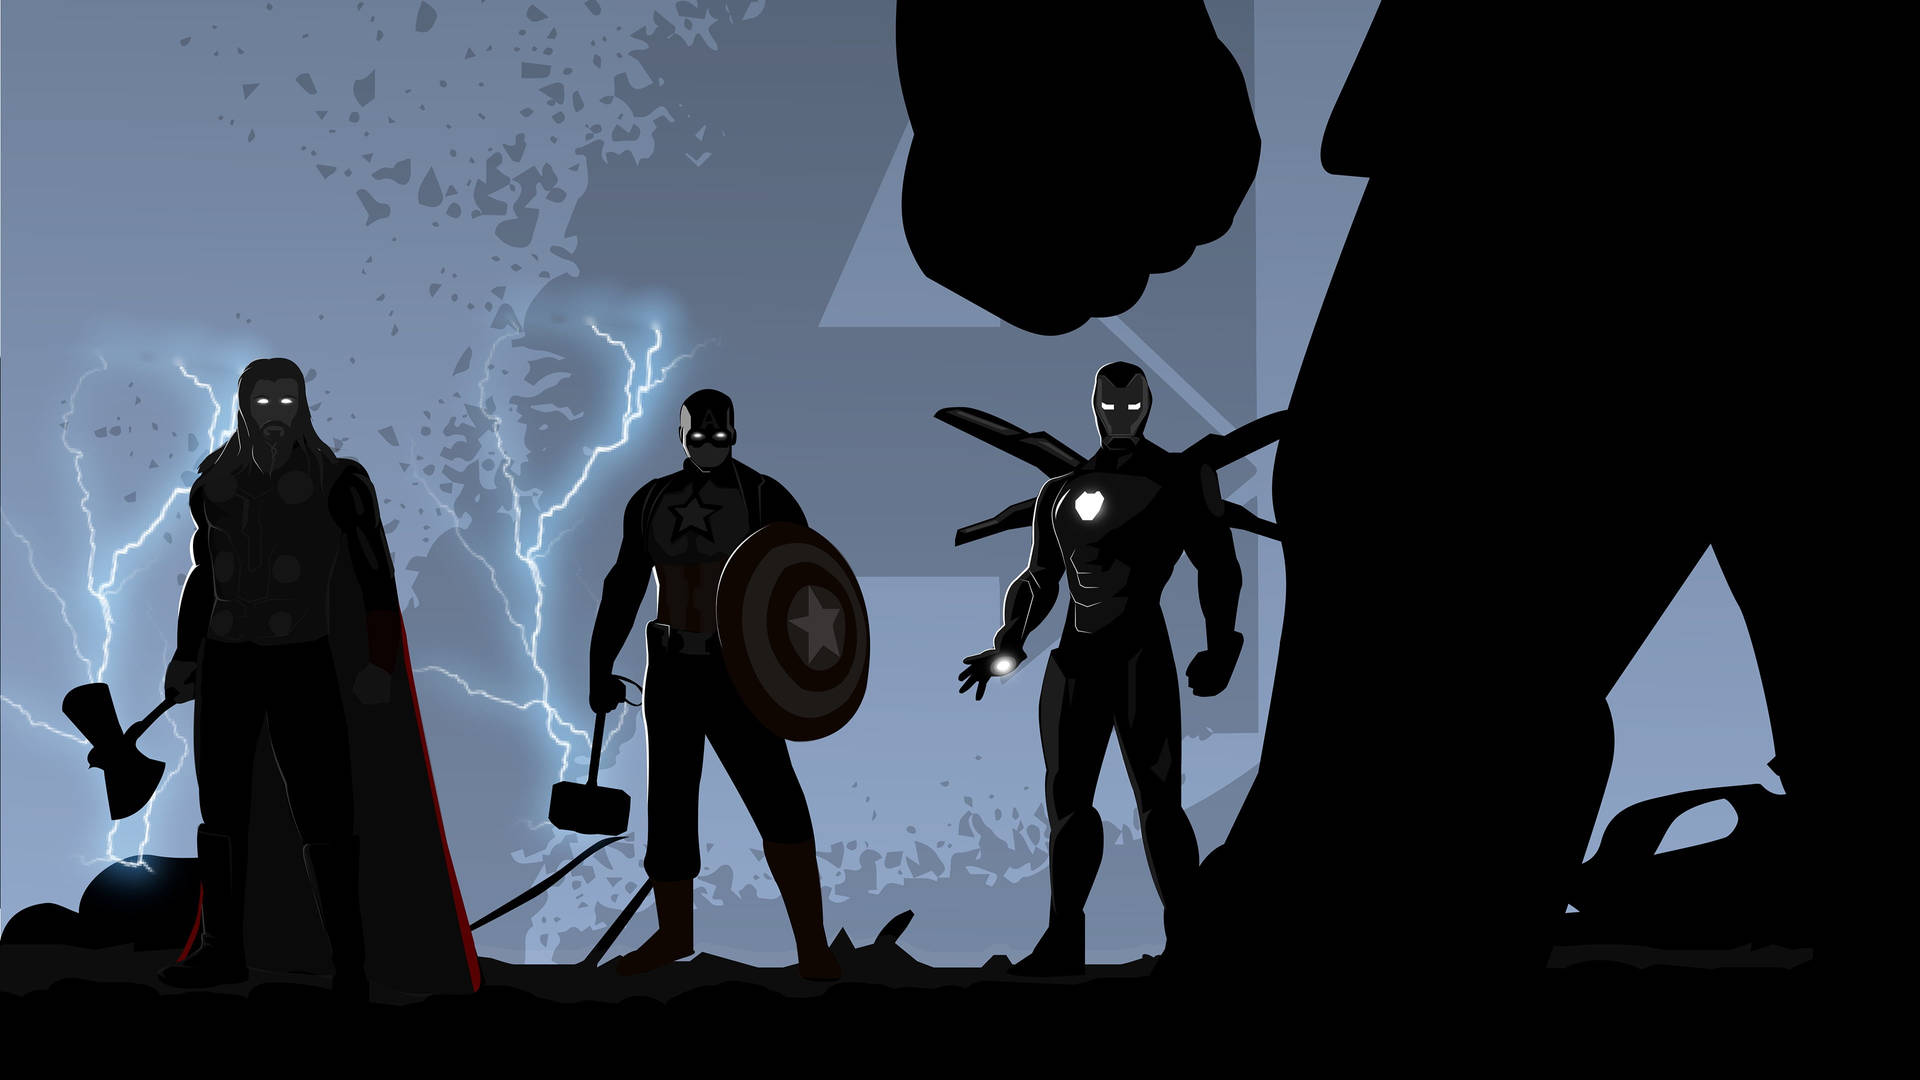 Marvelavengers Silhouette (german): Marvel Avengers Silhouette (german): Marvel Avengers Silhouette Wallpaper